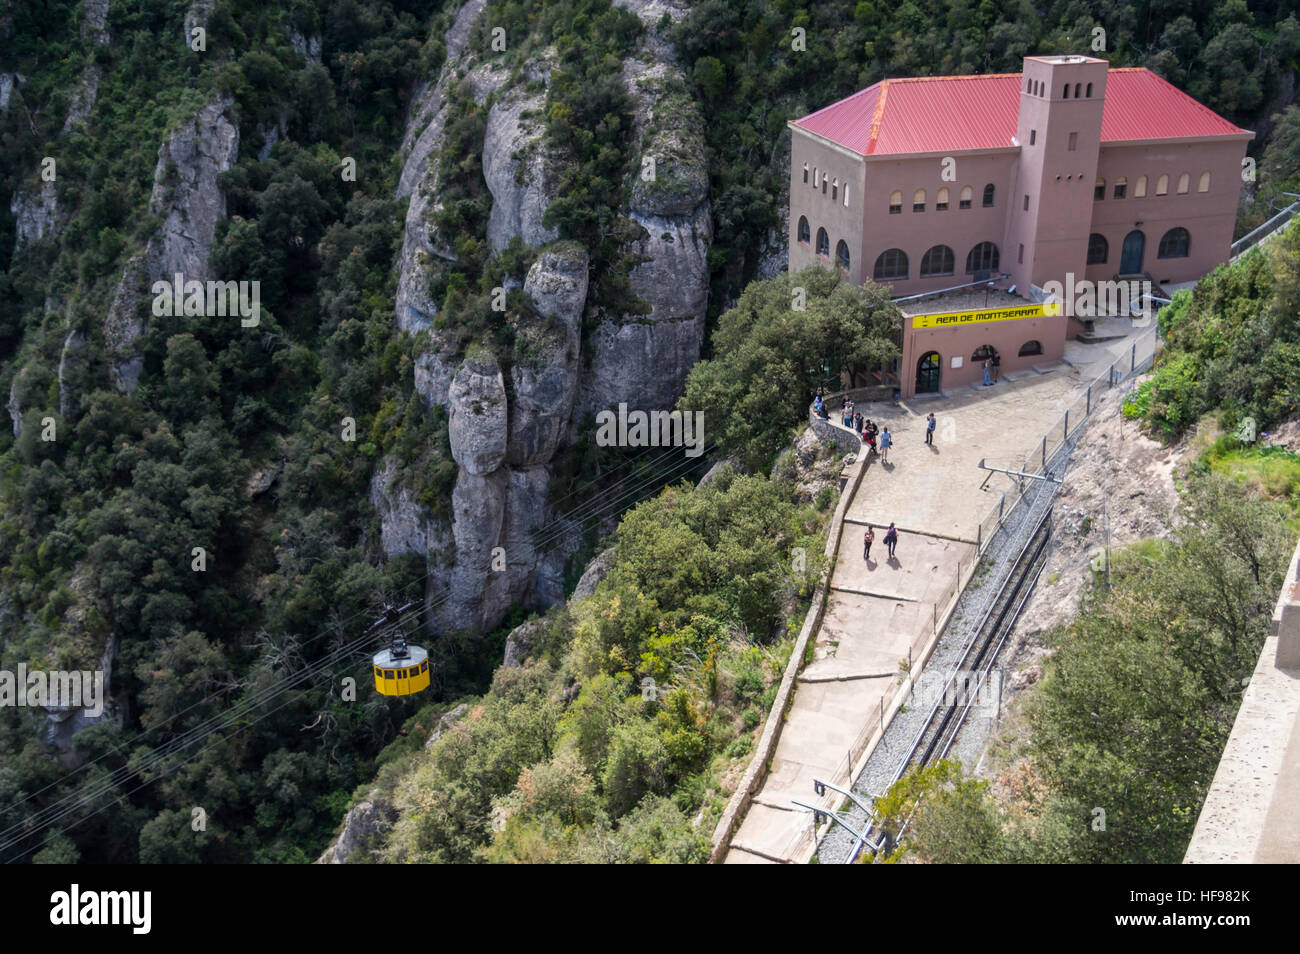 Von der Aeri de Montserrat Pendelbahn Ankunft an der Bergstation der Gondelbahn. Monistrol de Montserrat, Katalonien, Spanien. Stockfoto